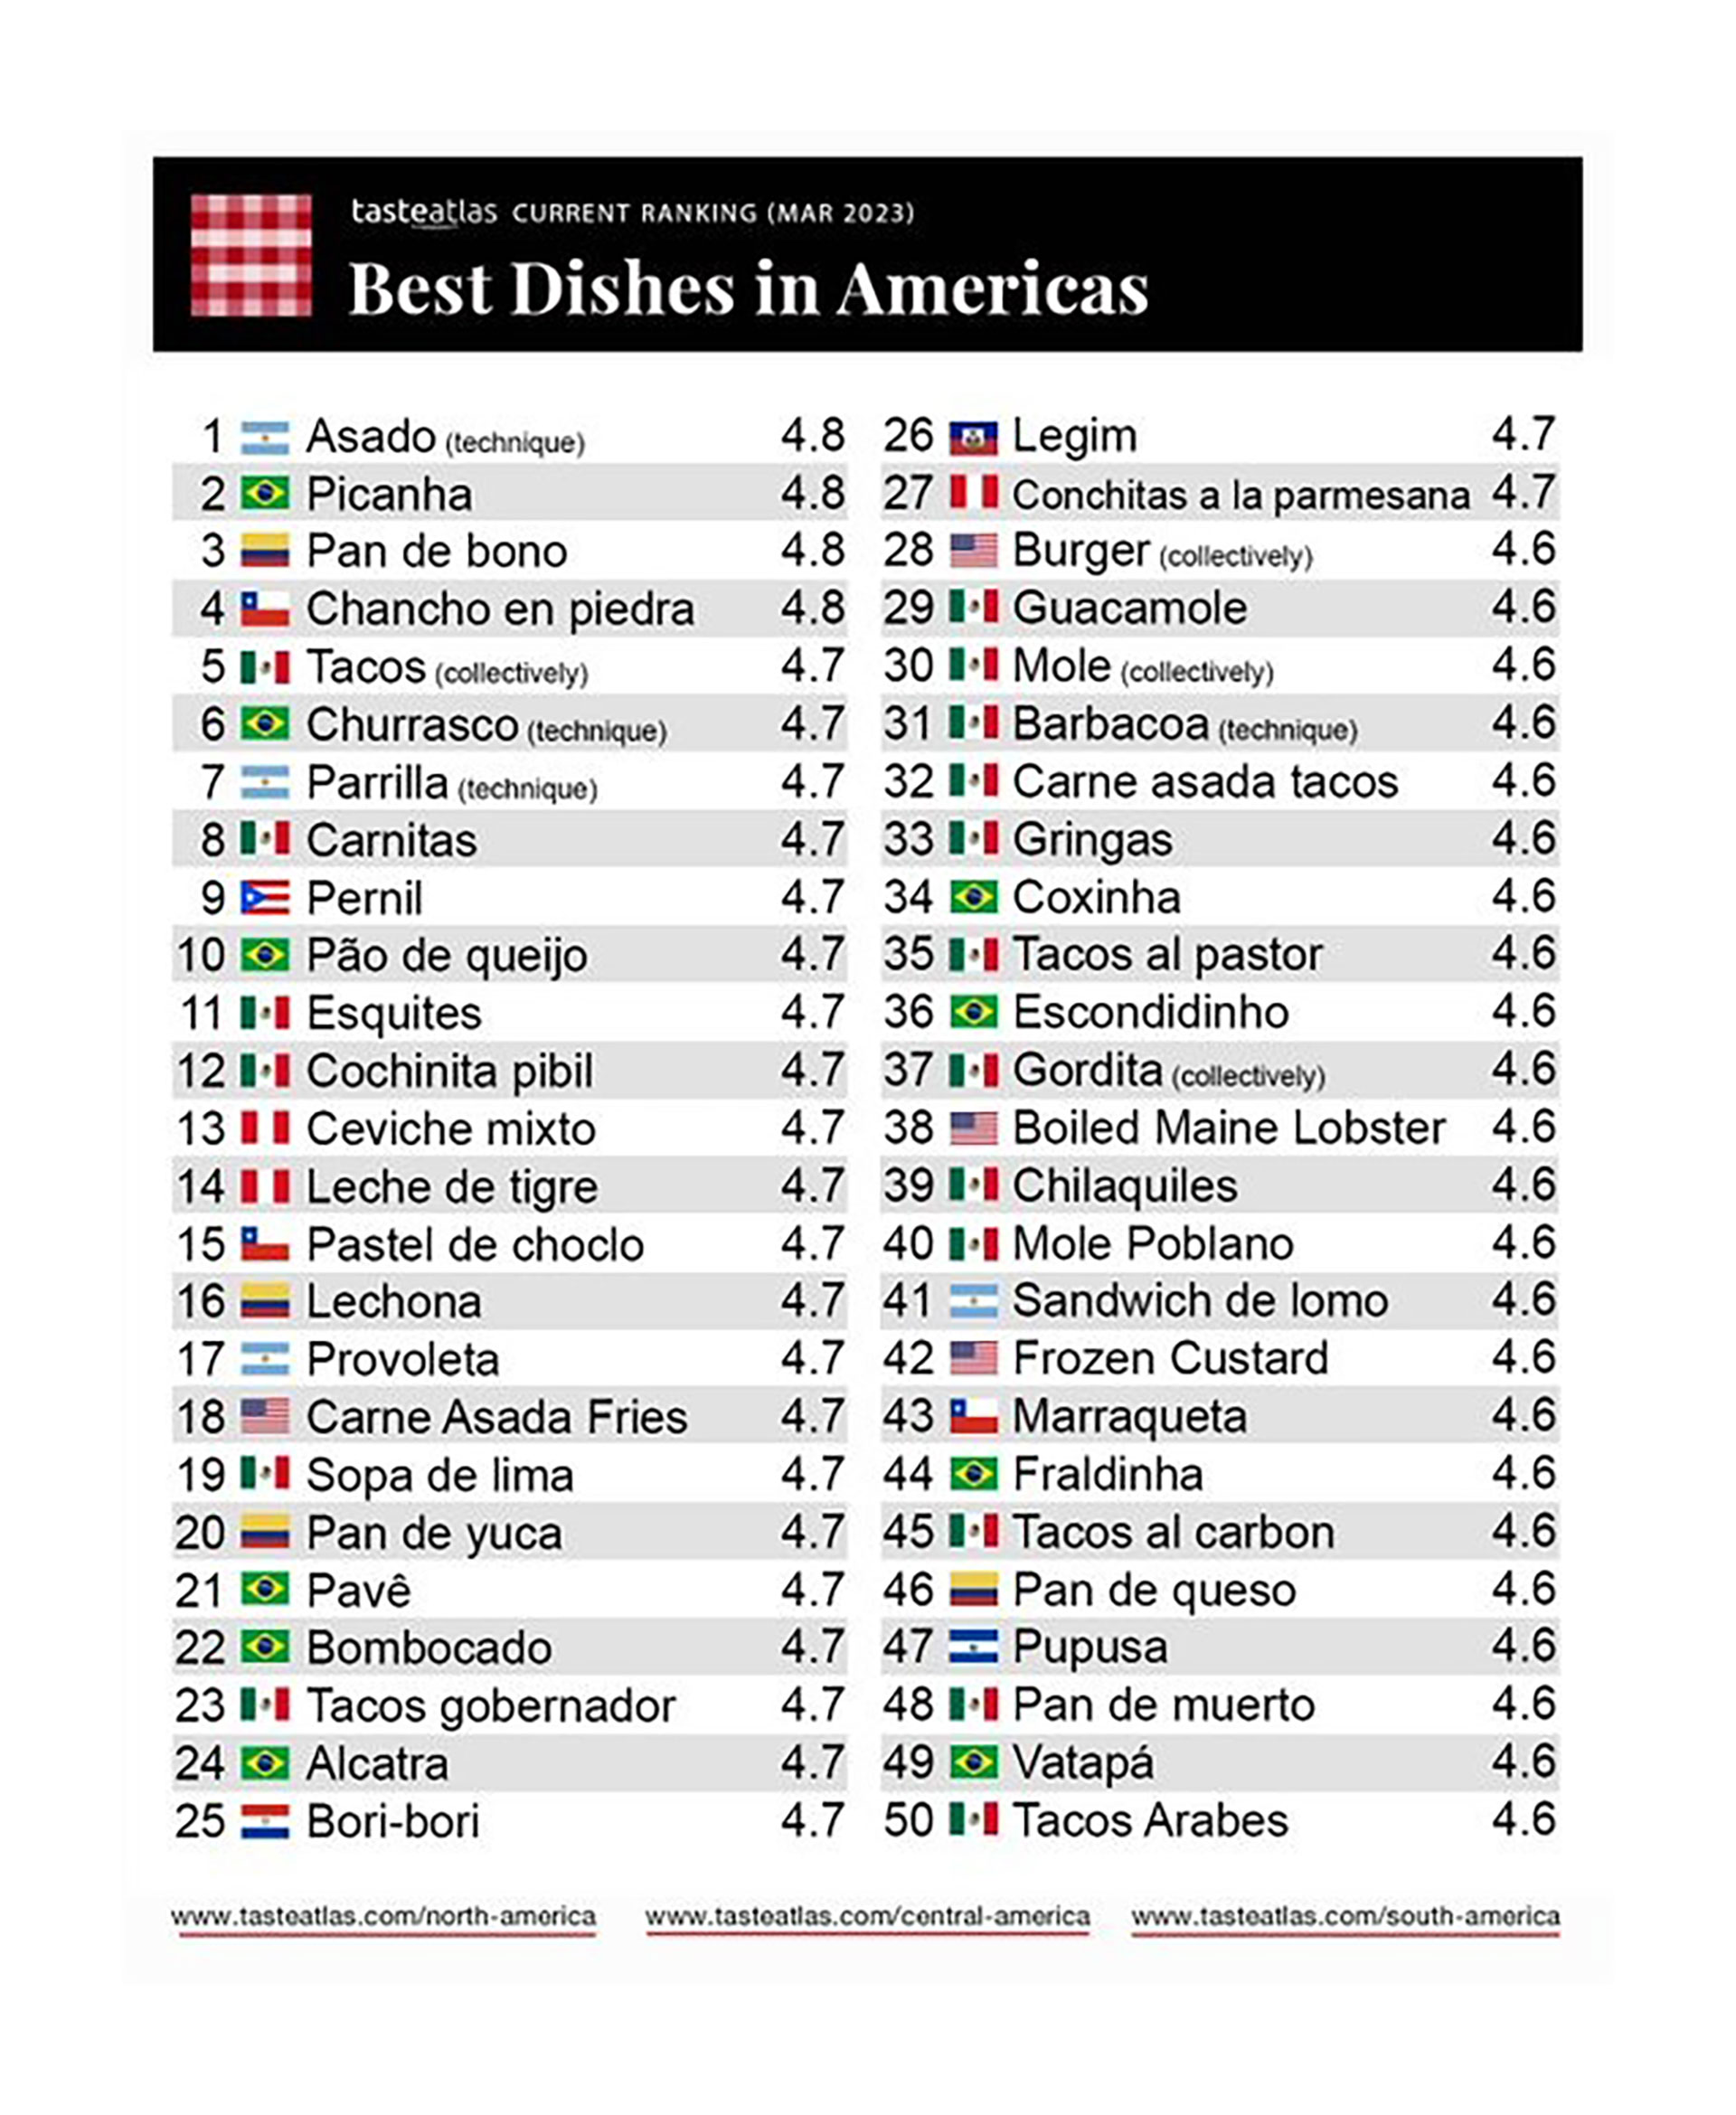 El ranking de los mejores platos de las Américas, con el asado en primer lugar (Taste Atlas)